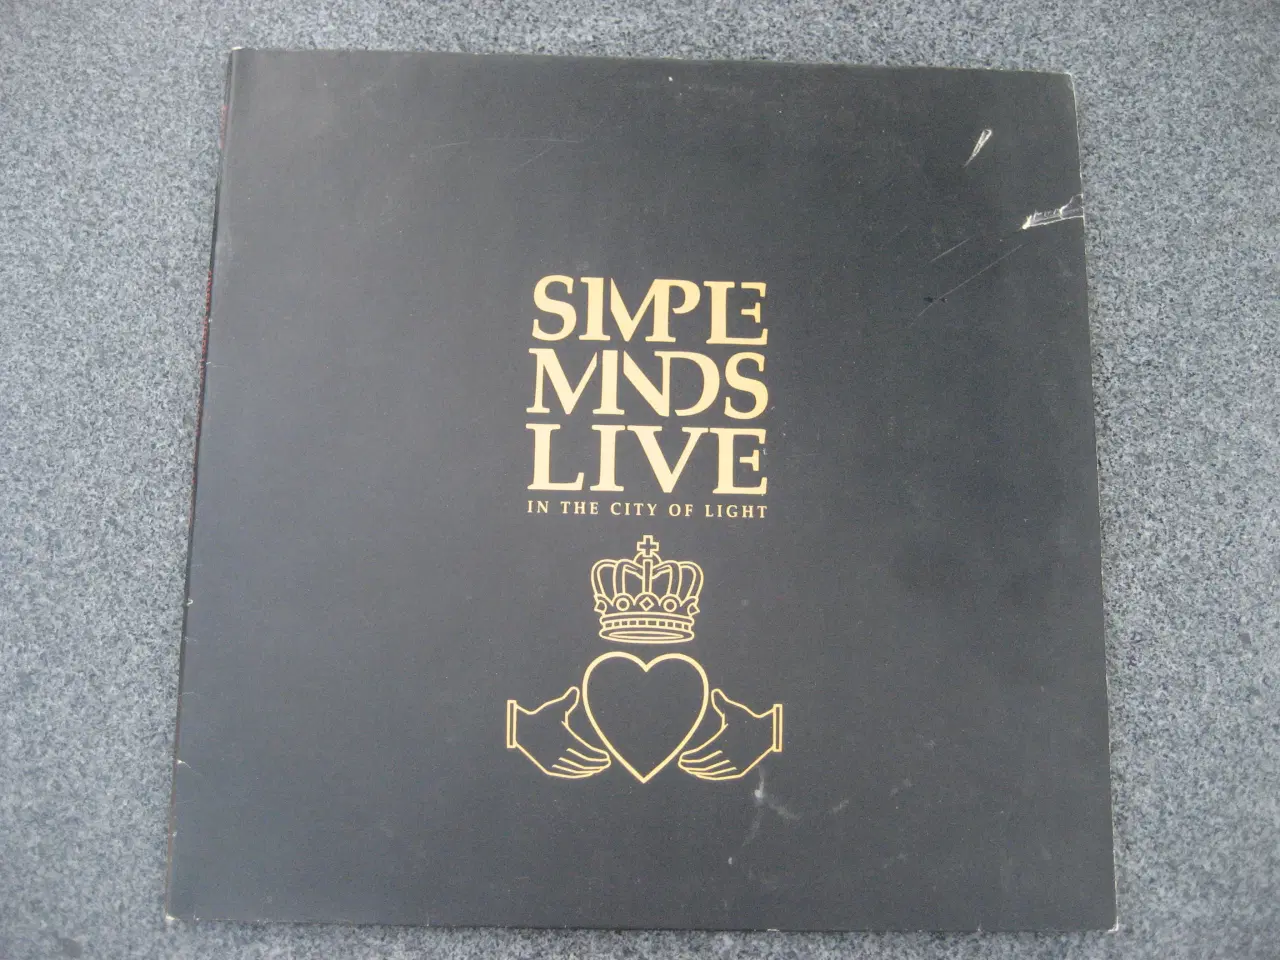 Billede 1 - Dobbelt LP med Simple Minds sælges